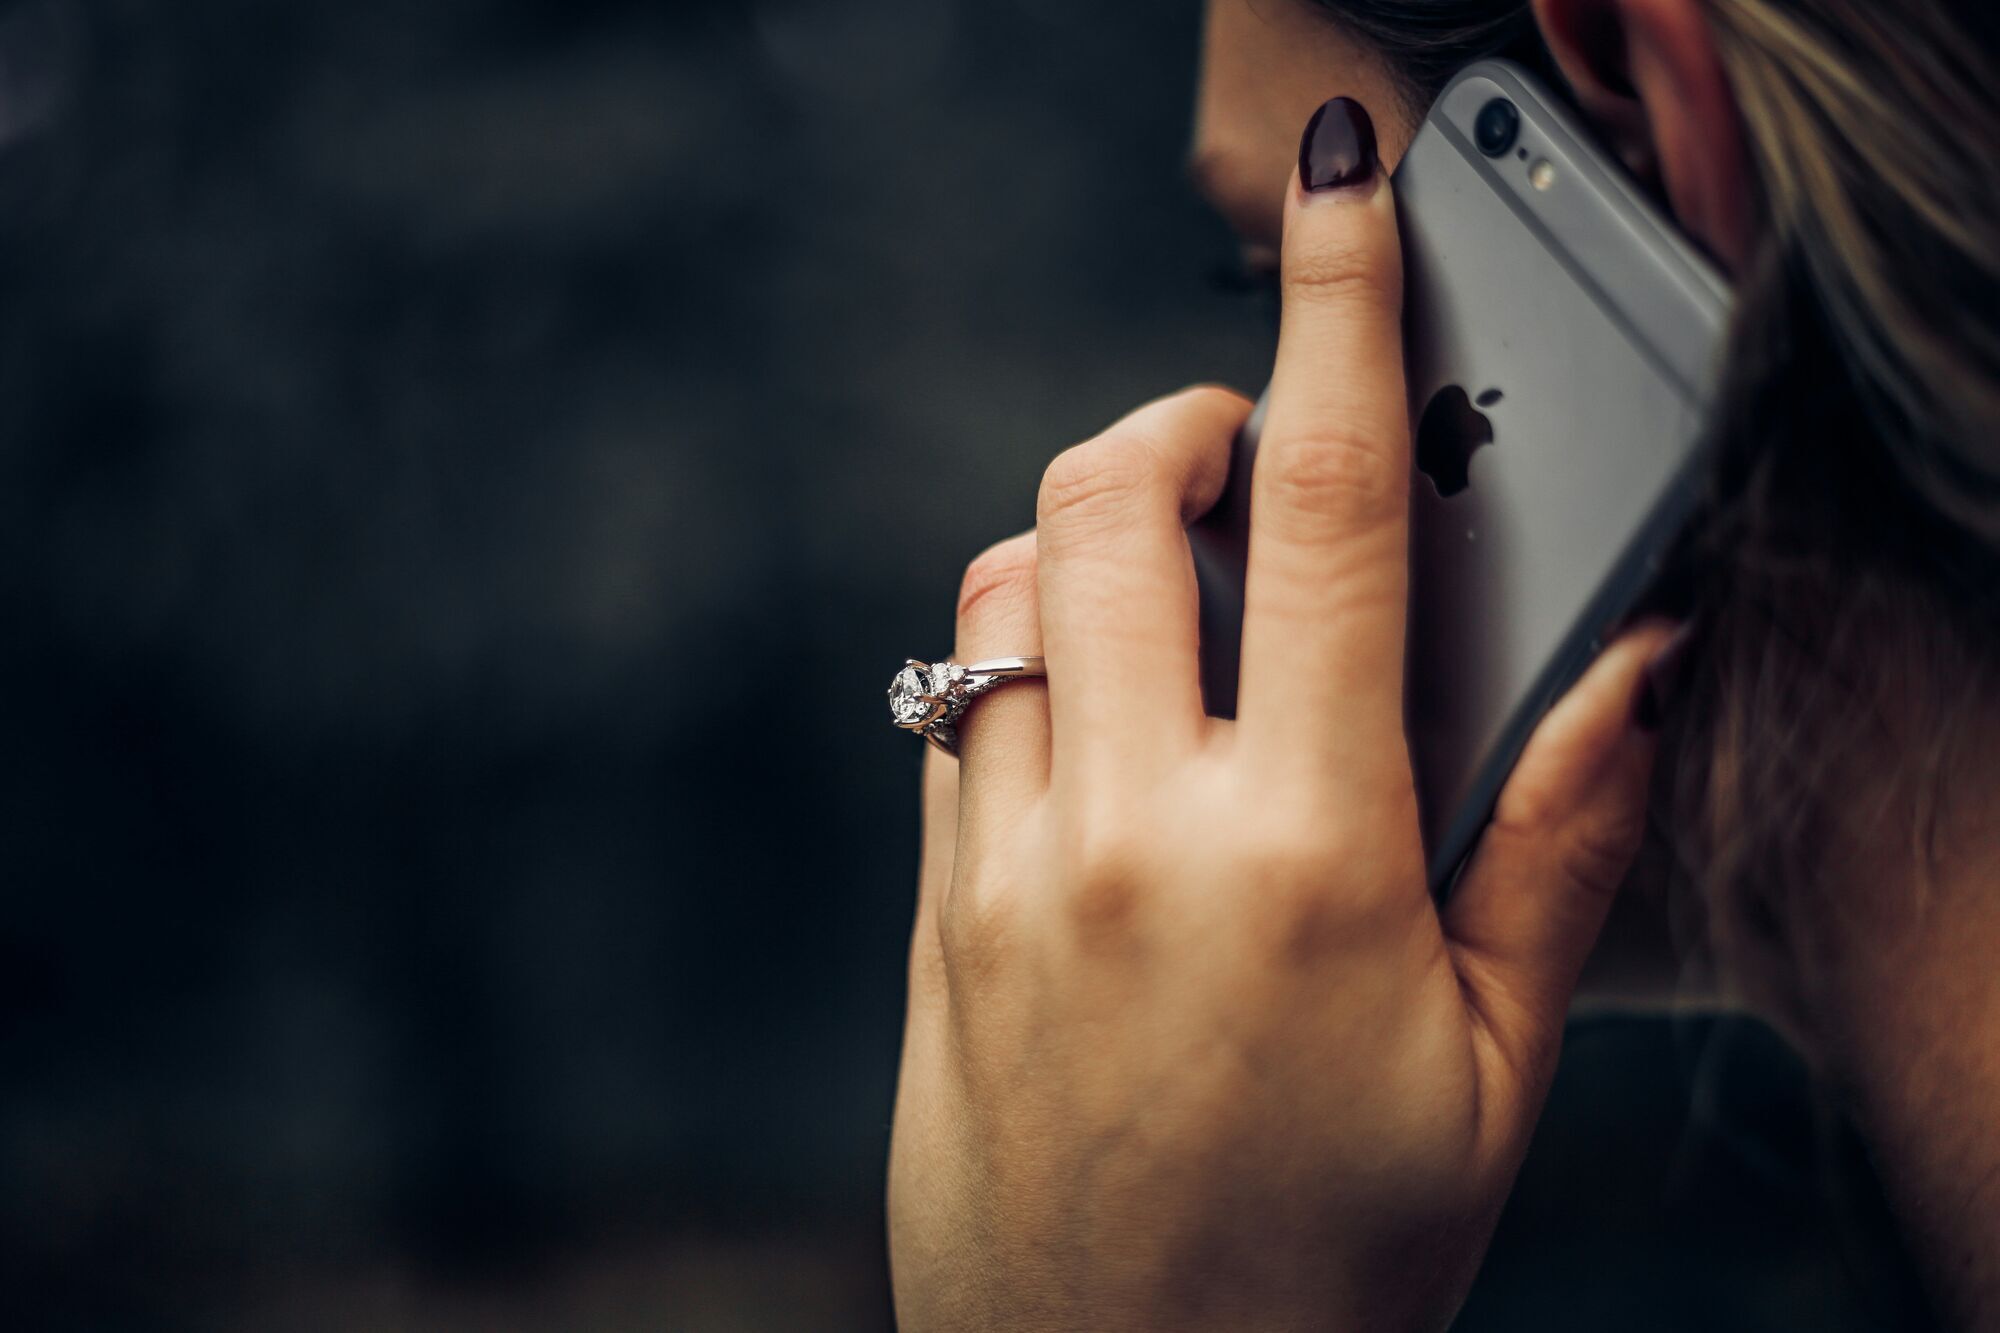 Чем могут быть опасны голосовые сообщения и как они влияют на дружбу